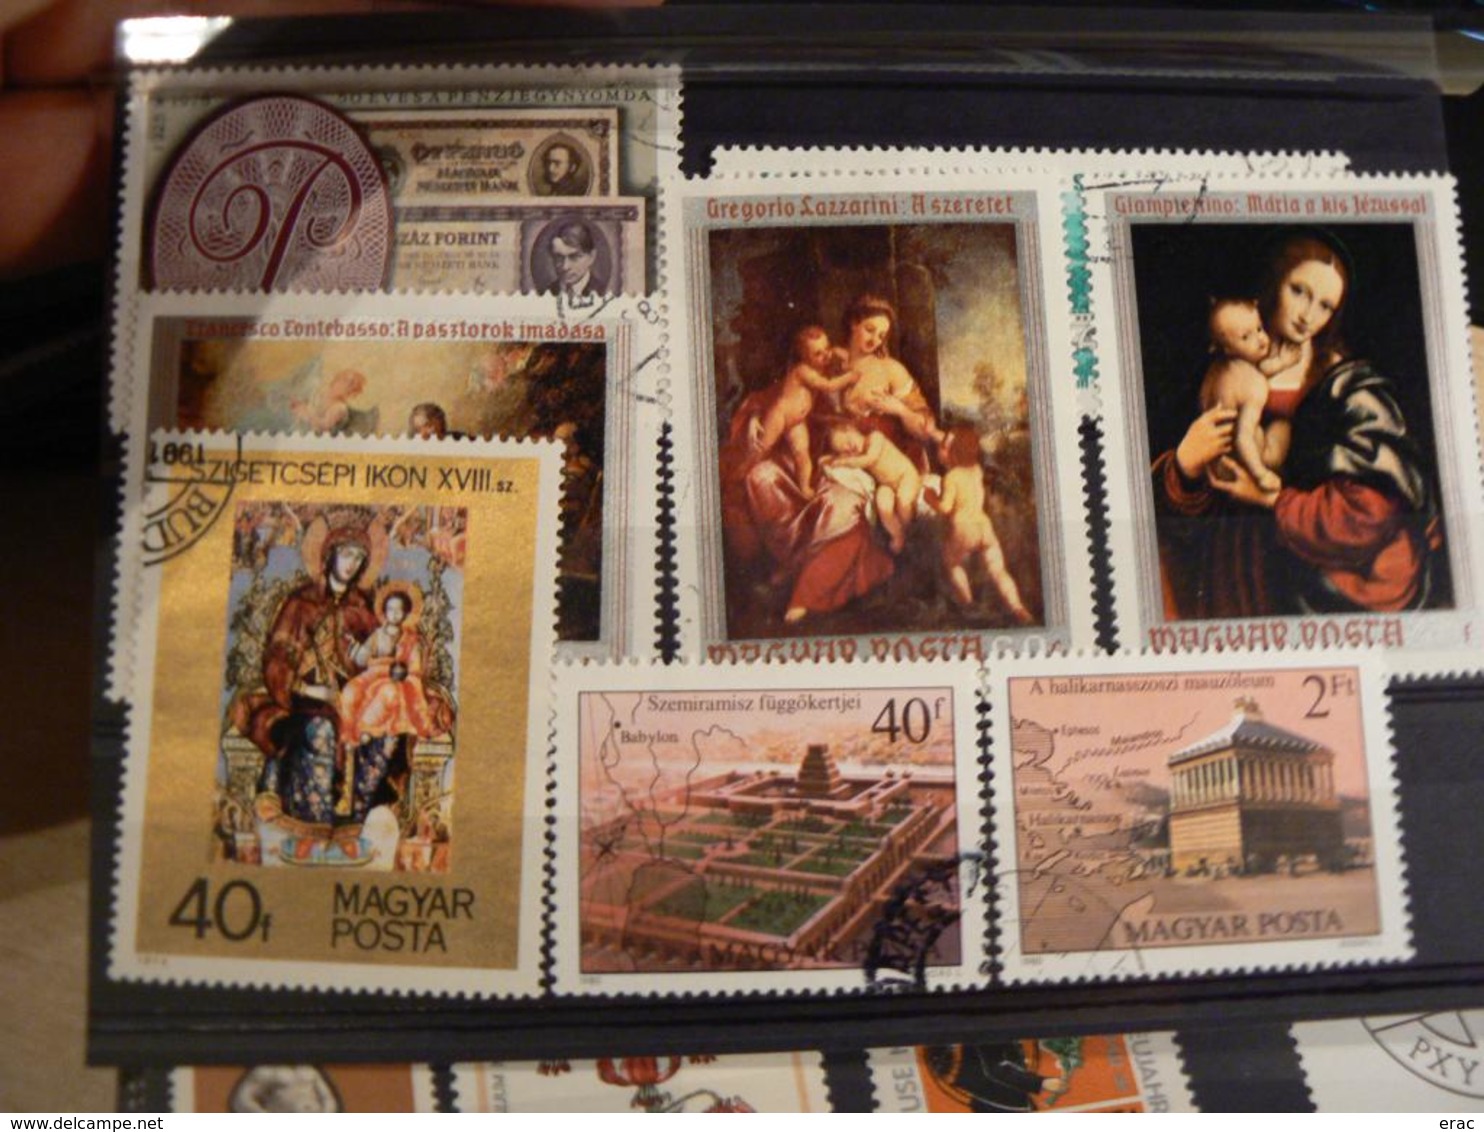 HONGRIE - Collection de timbres anciens et récents